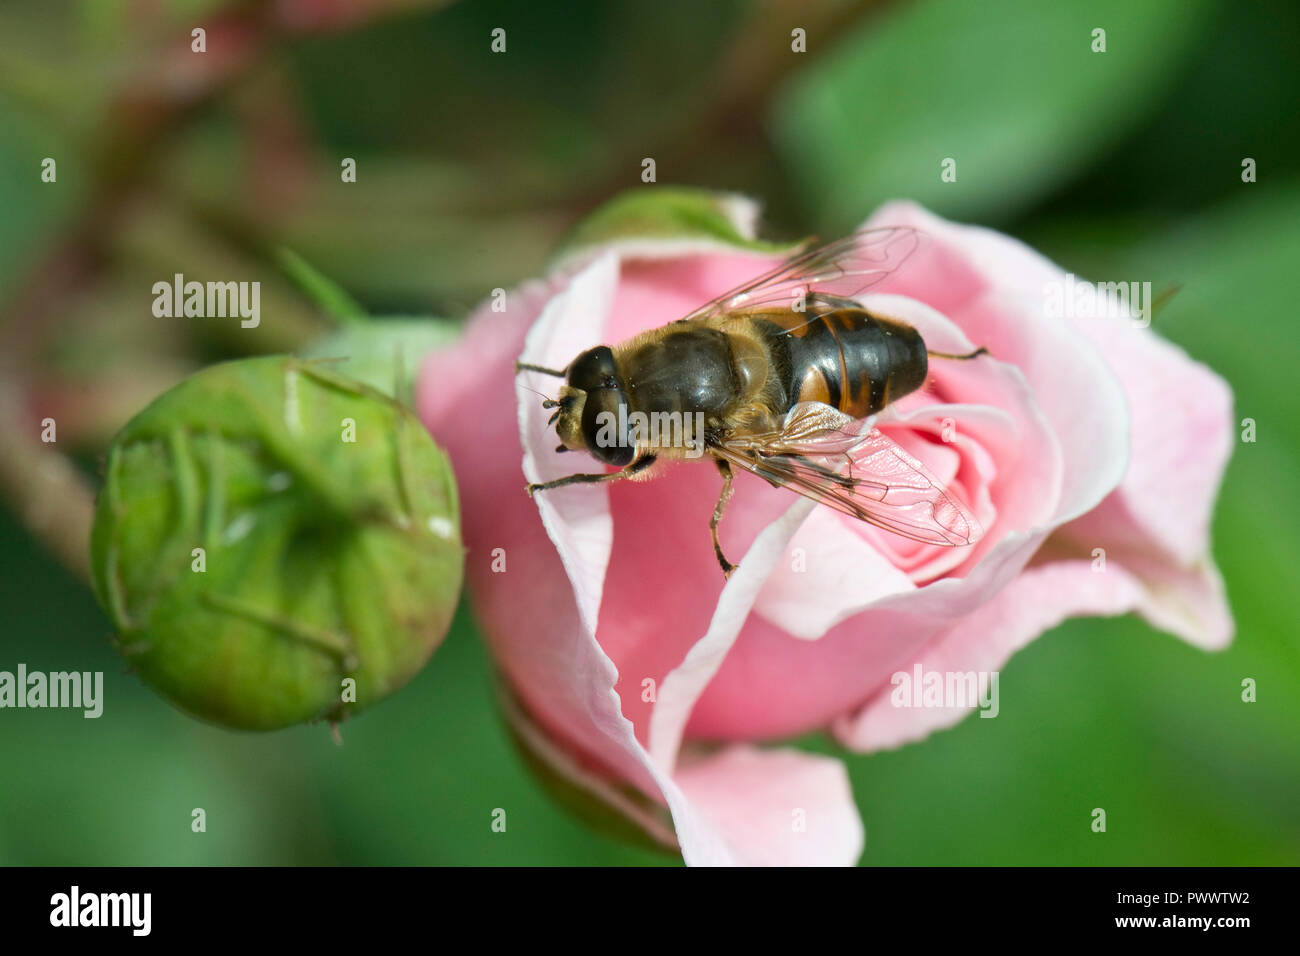 Un drone fly, Eristalis tenax hoverfly, l'atterrissage sur le bouton floral non ouverts d'une rose rose, un pollinisateur de l'été, juin Banque D'Images